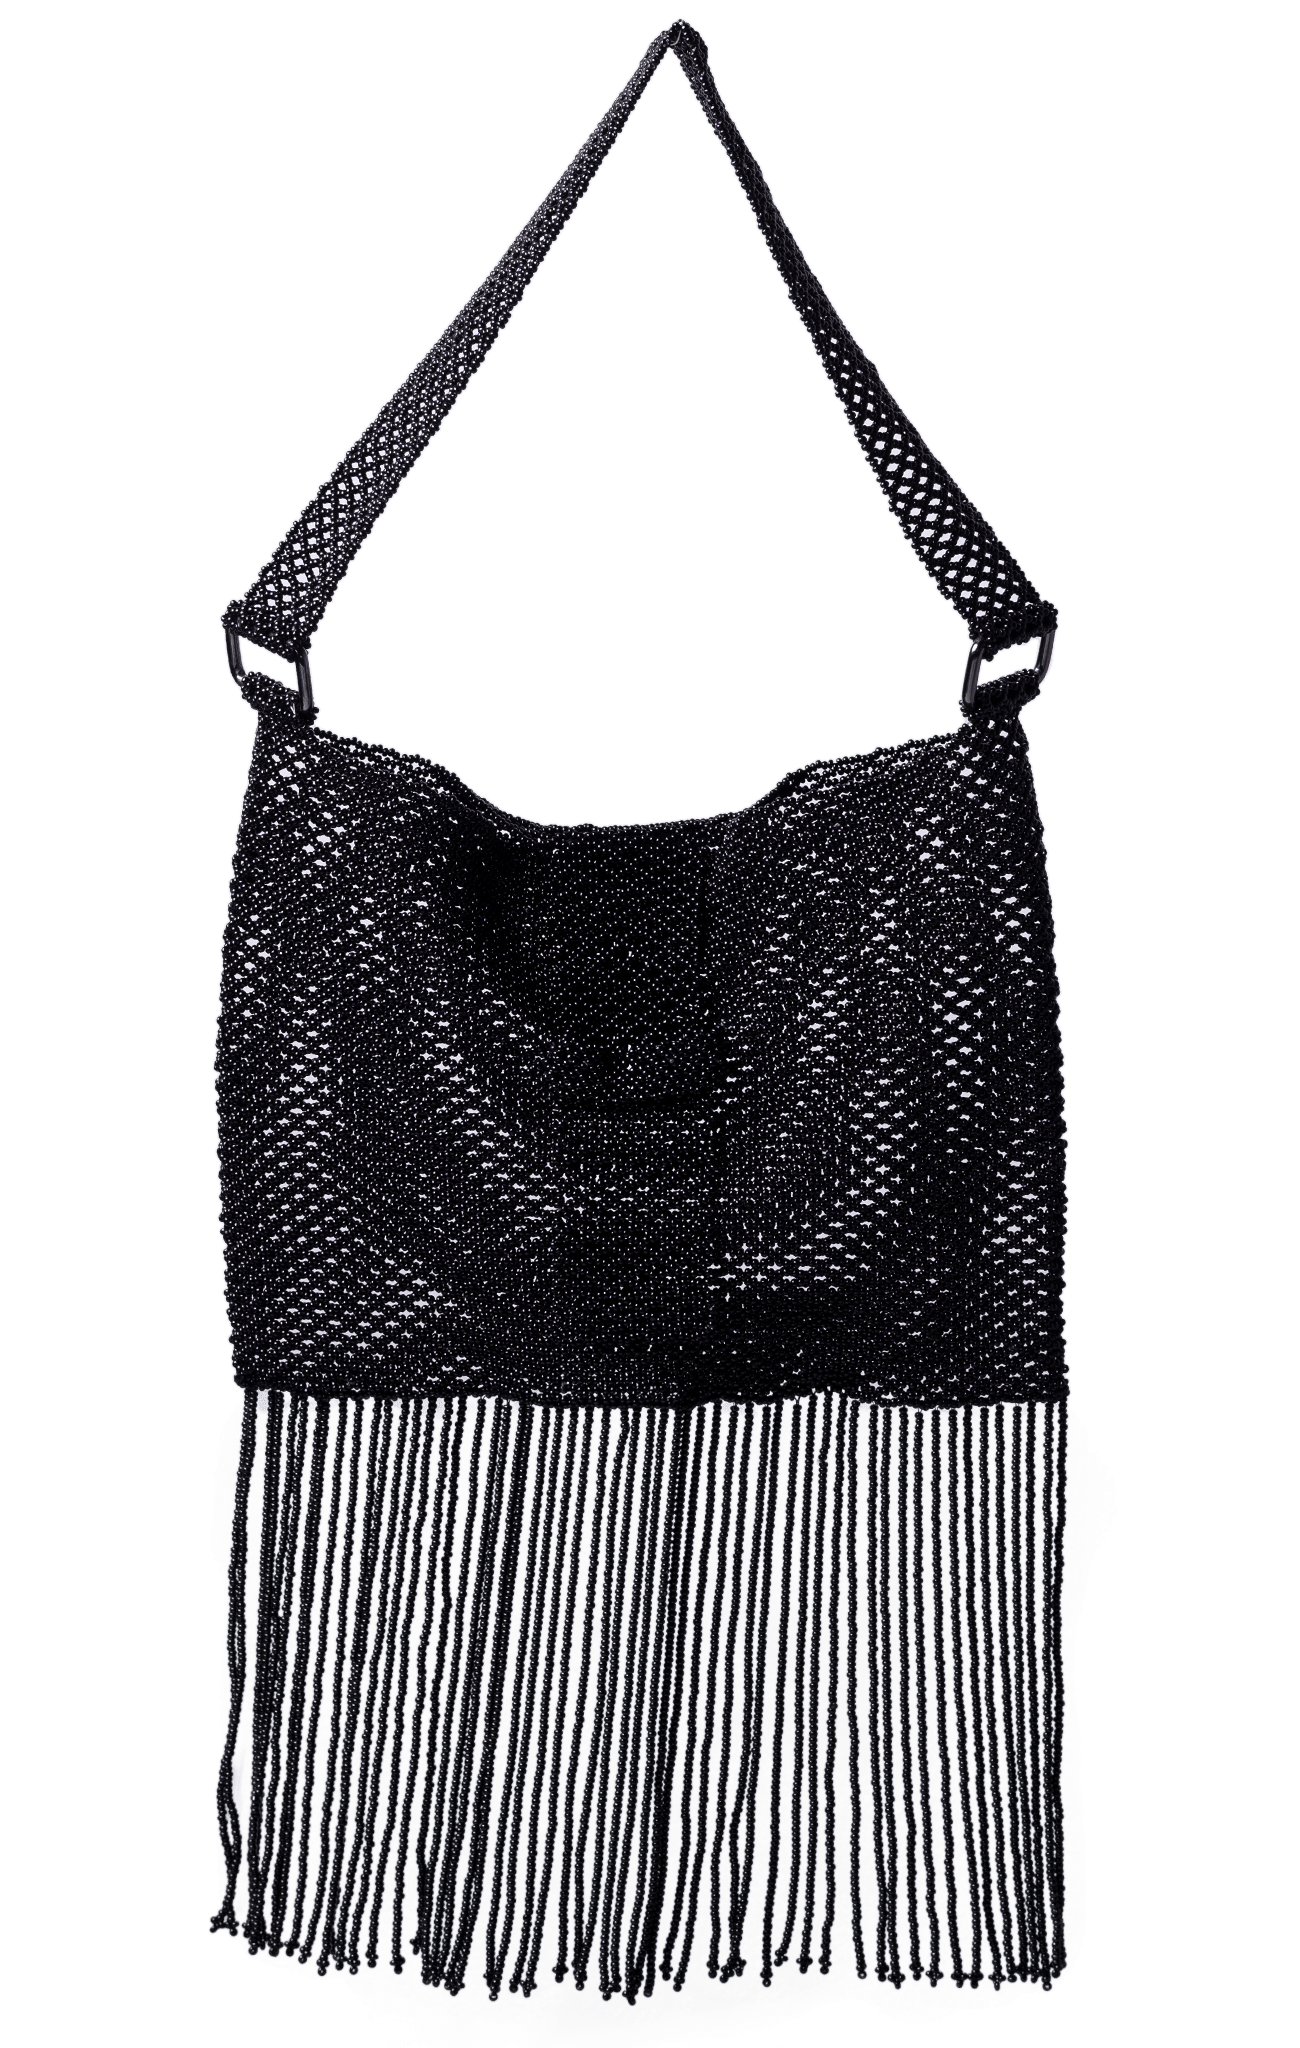 Fringe Crossbody Bag in Black